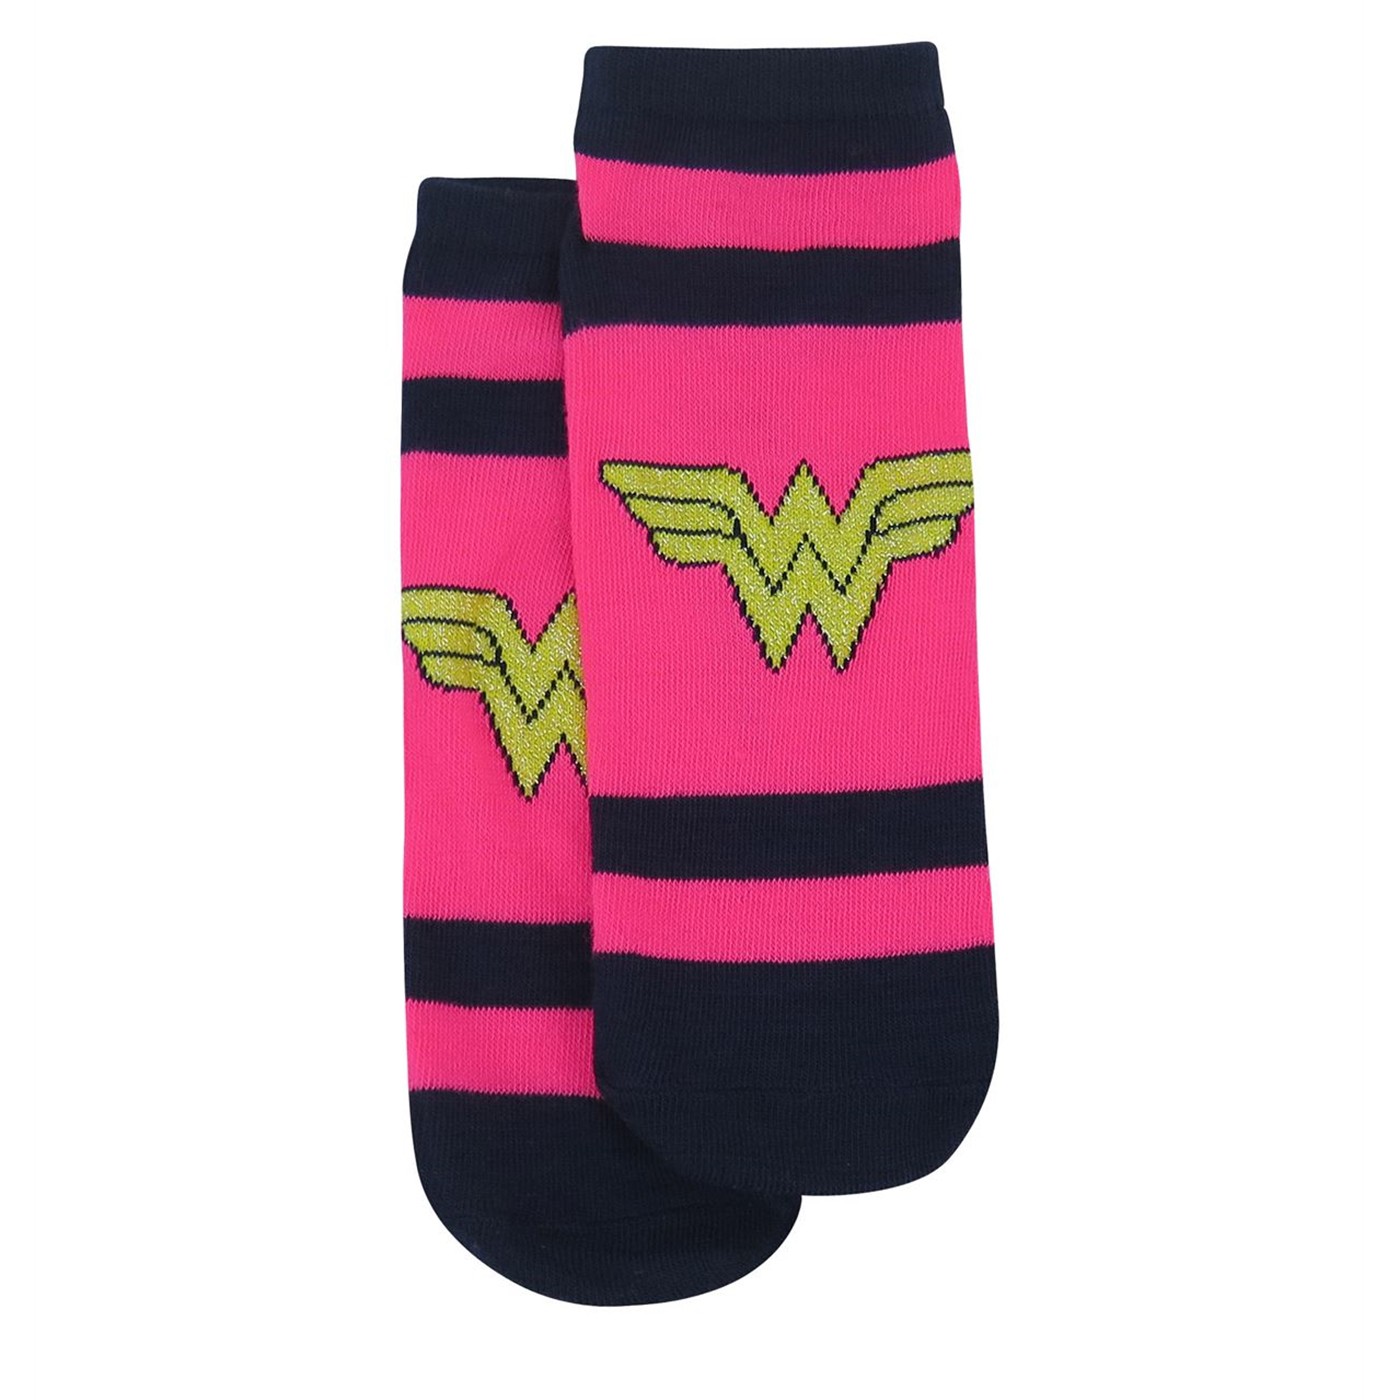 DC Trinity Women's Striped Low-Cut Sock 3 Pack